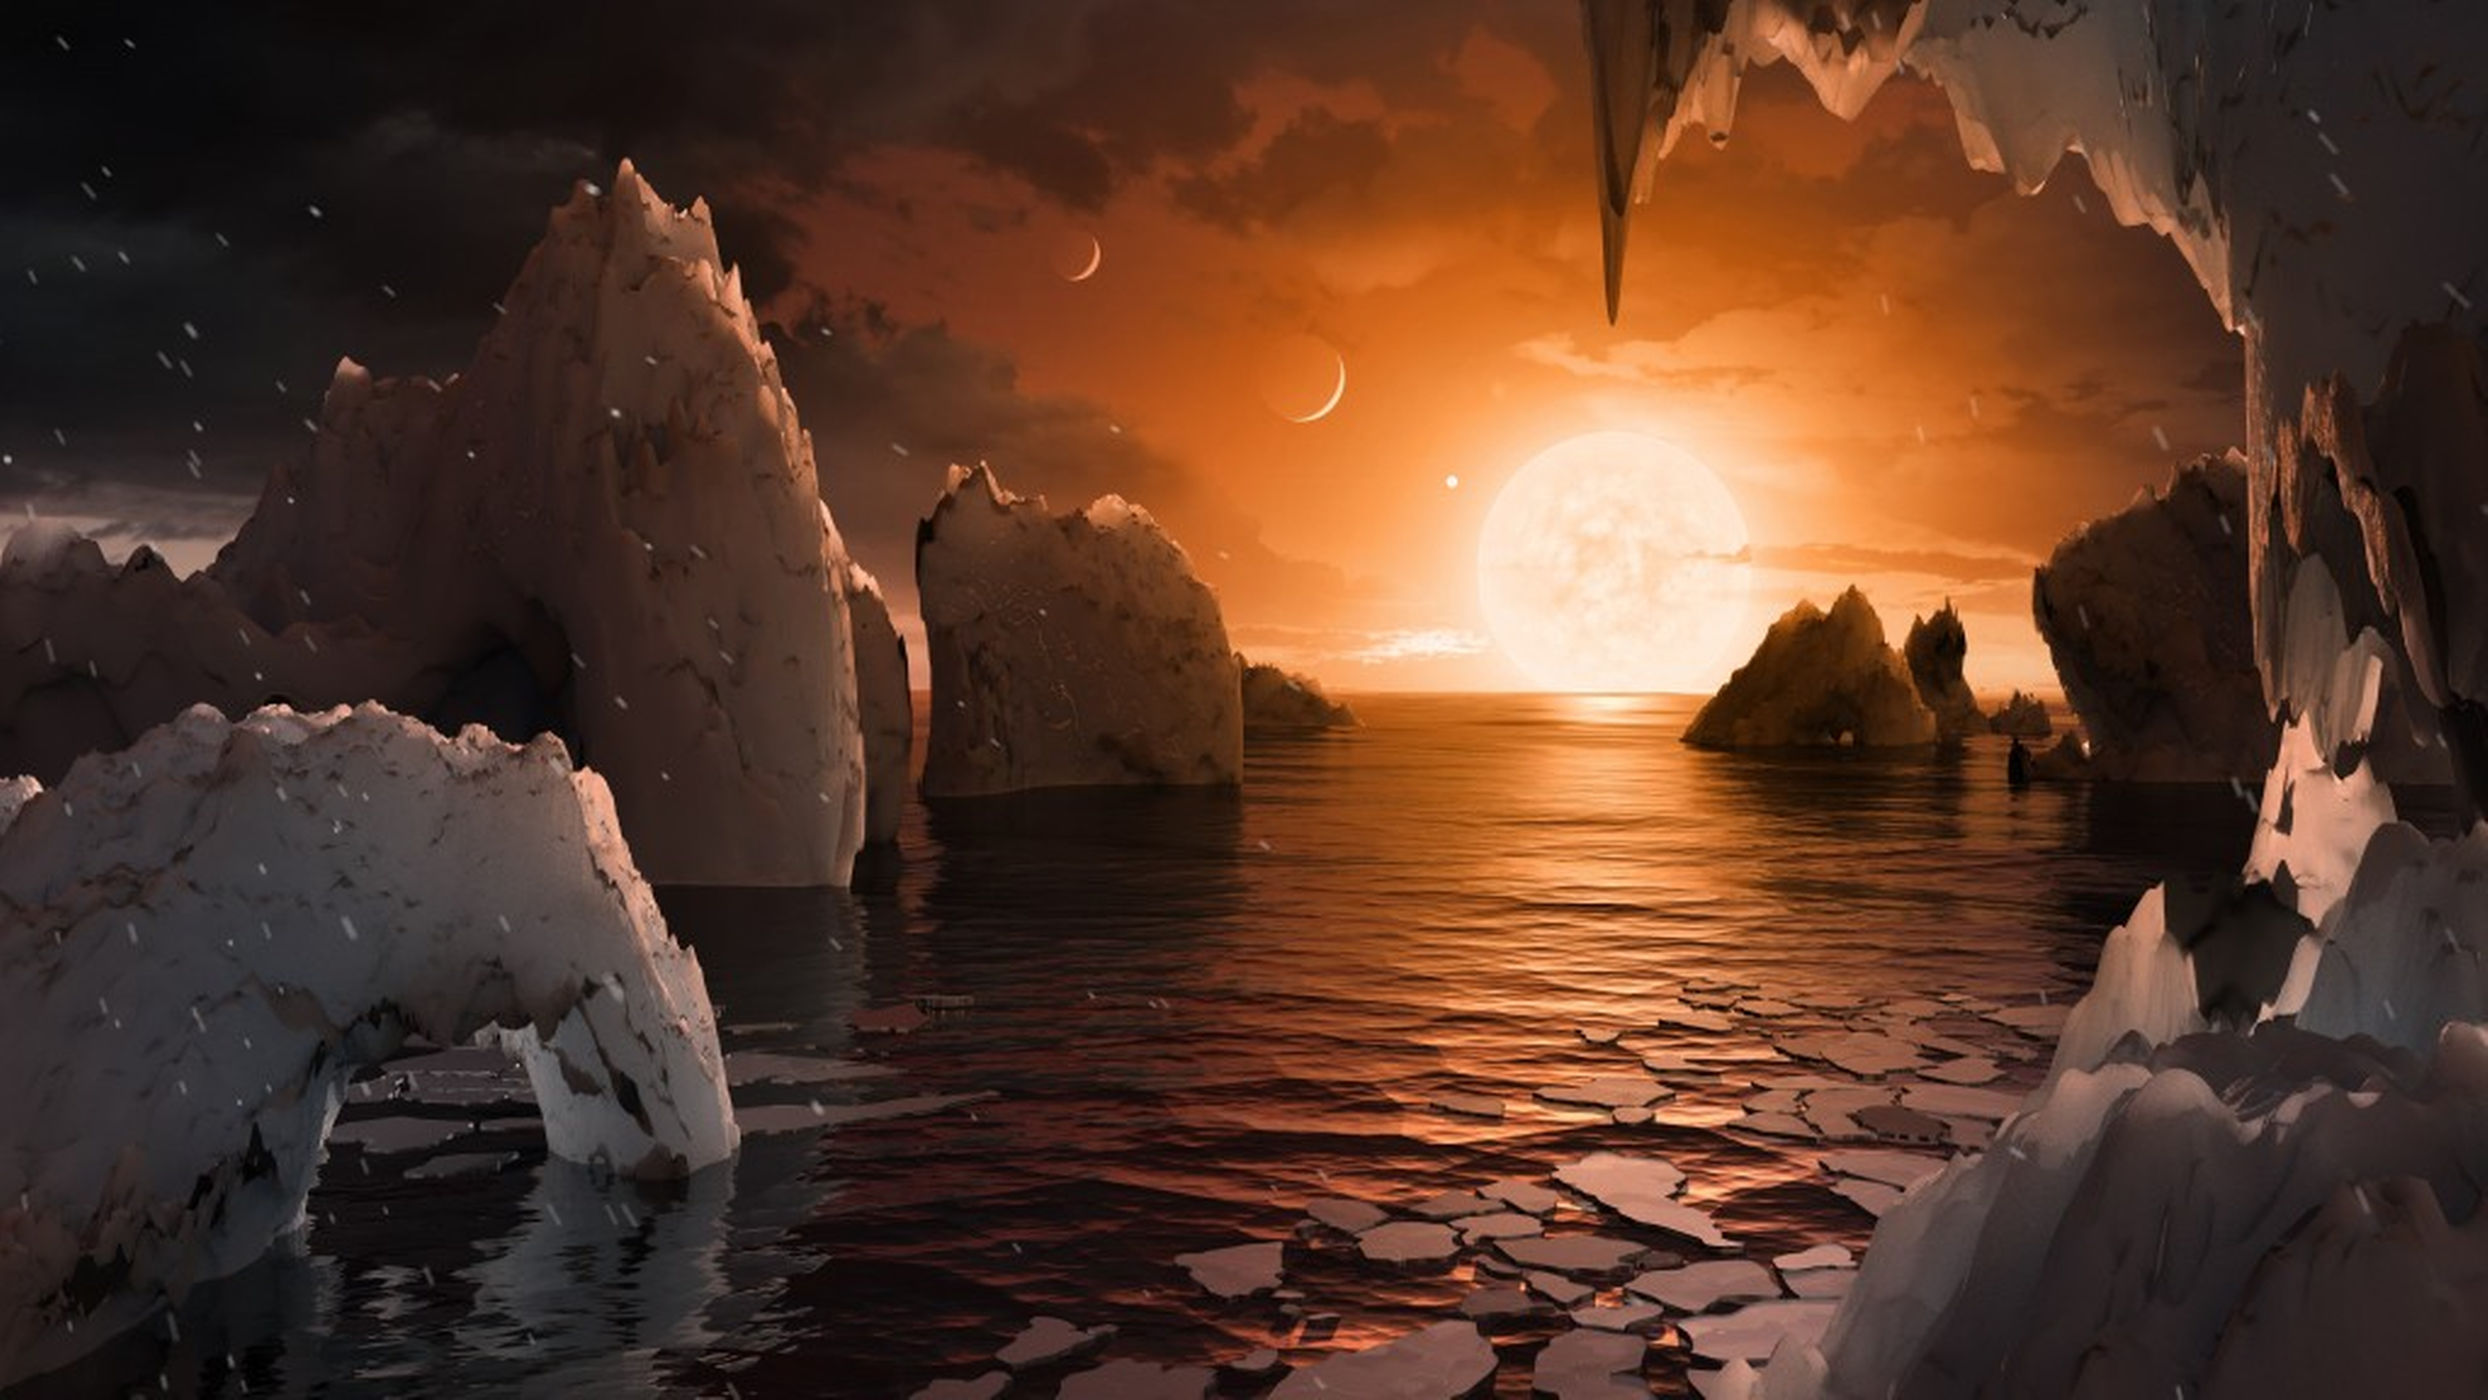 TRAPPIST-1 System ความรู้รอบโลก นาซาพบระบบสุริยะ เกร็ดความรู้